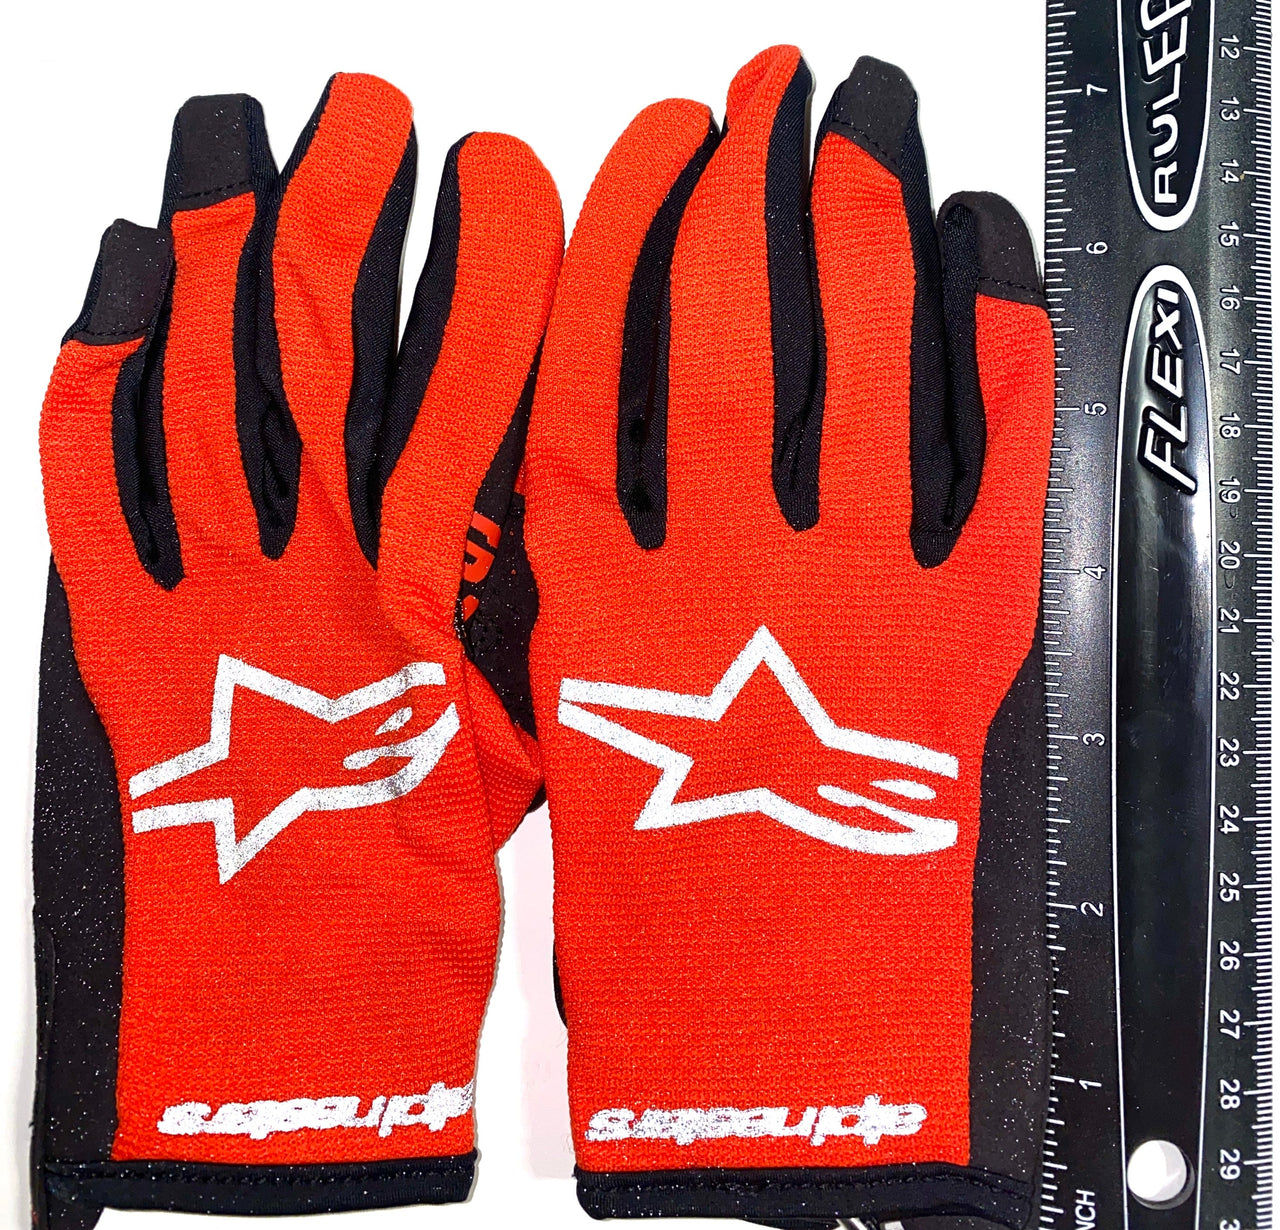 Children's MX Gloves- Alpine Stars Radar (Size Youth M) HOT ORANGE and BLACK